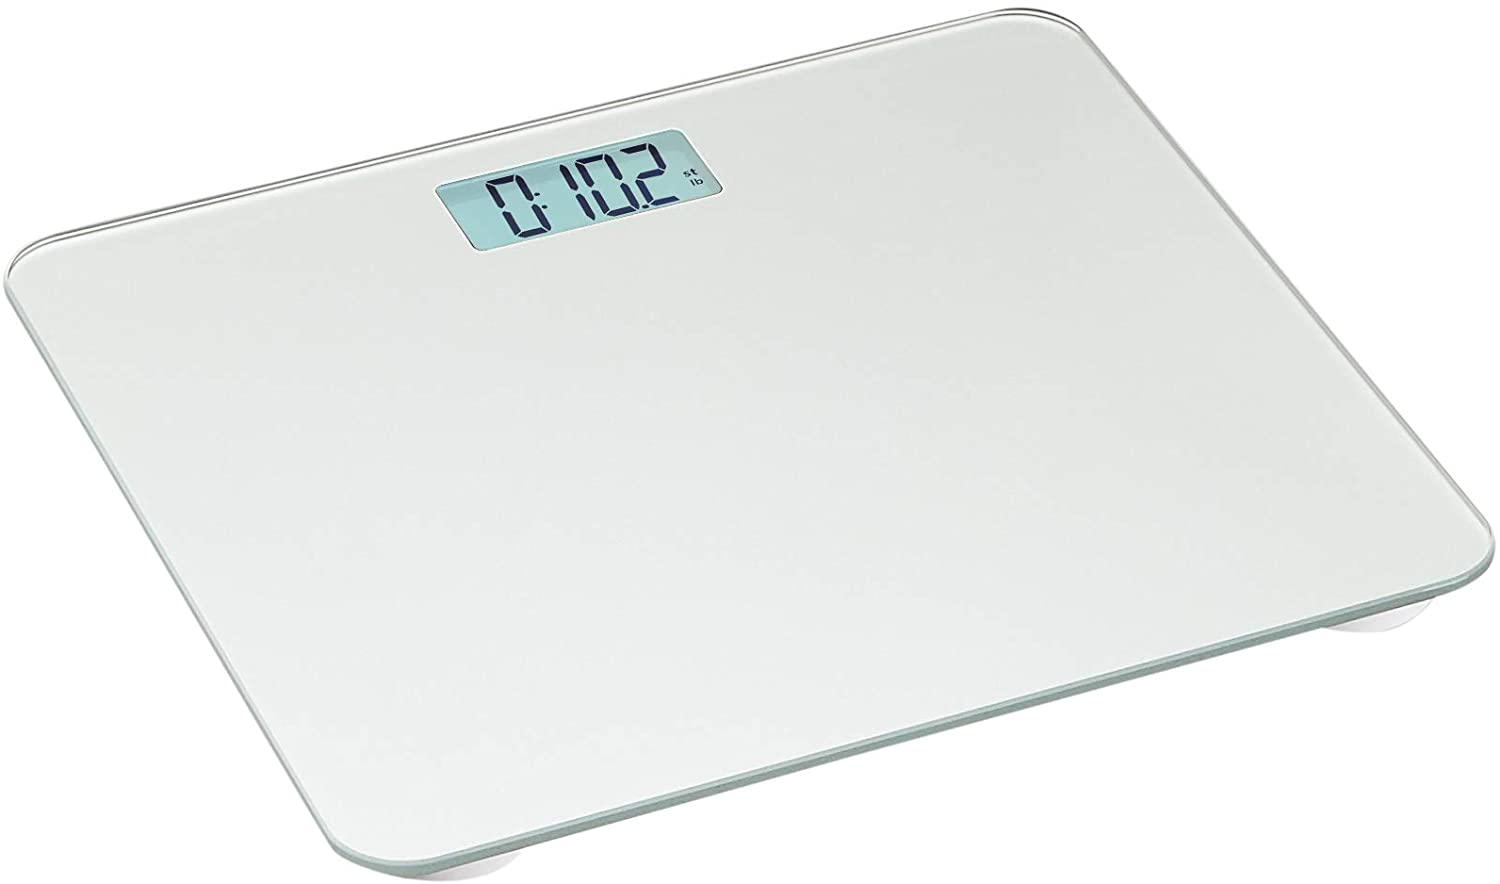 Amazon Basics Body Weight Scale